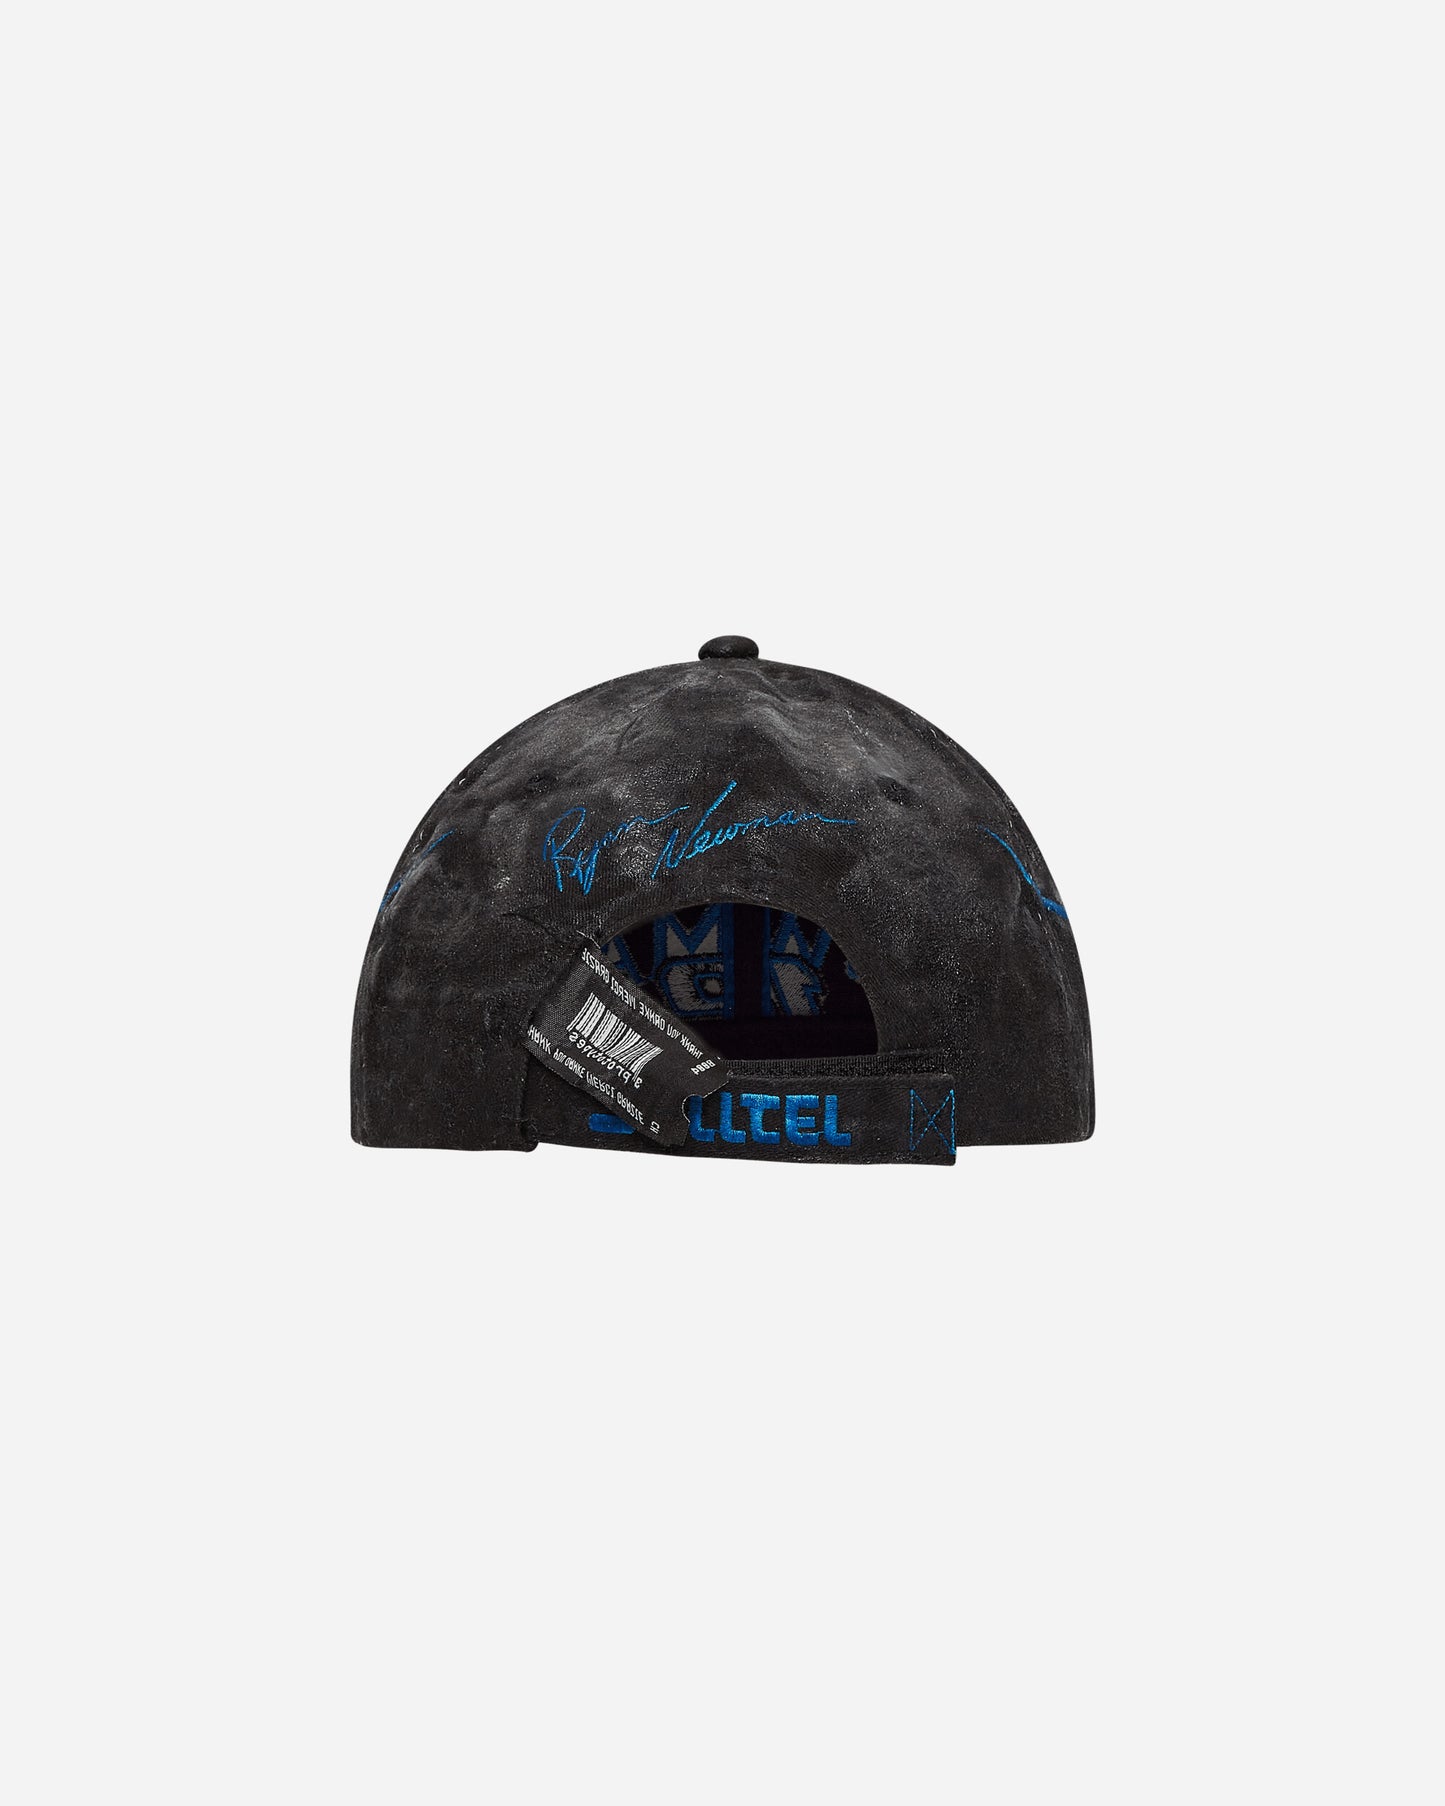 Prototypes Wmns Coated Cap Black Hats Caps PT05AC57USW BLACK